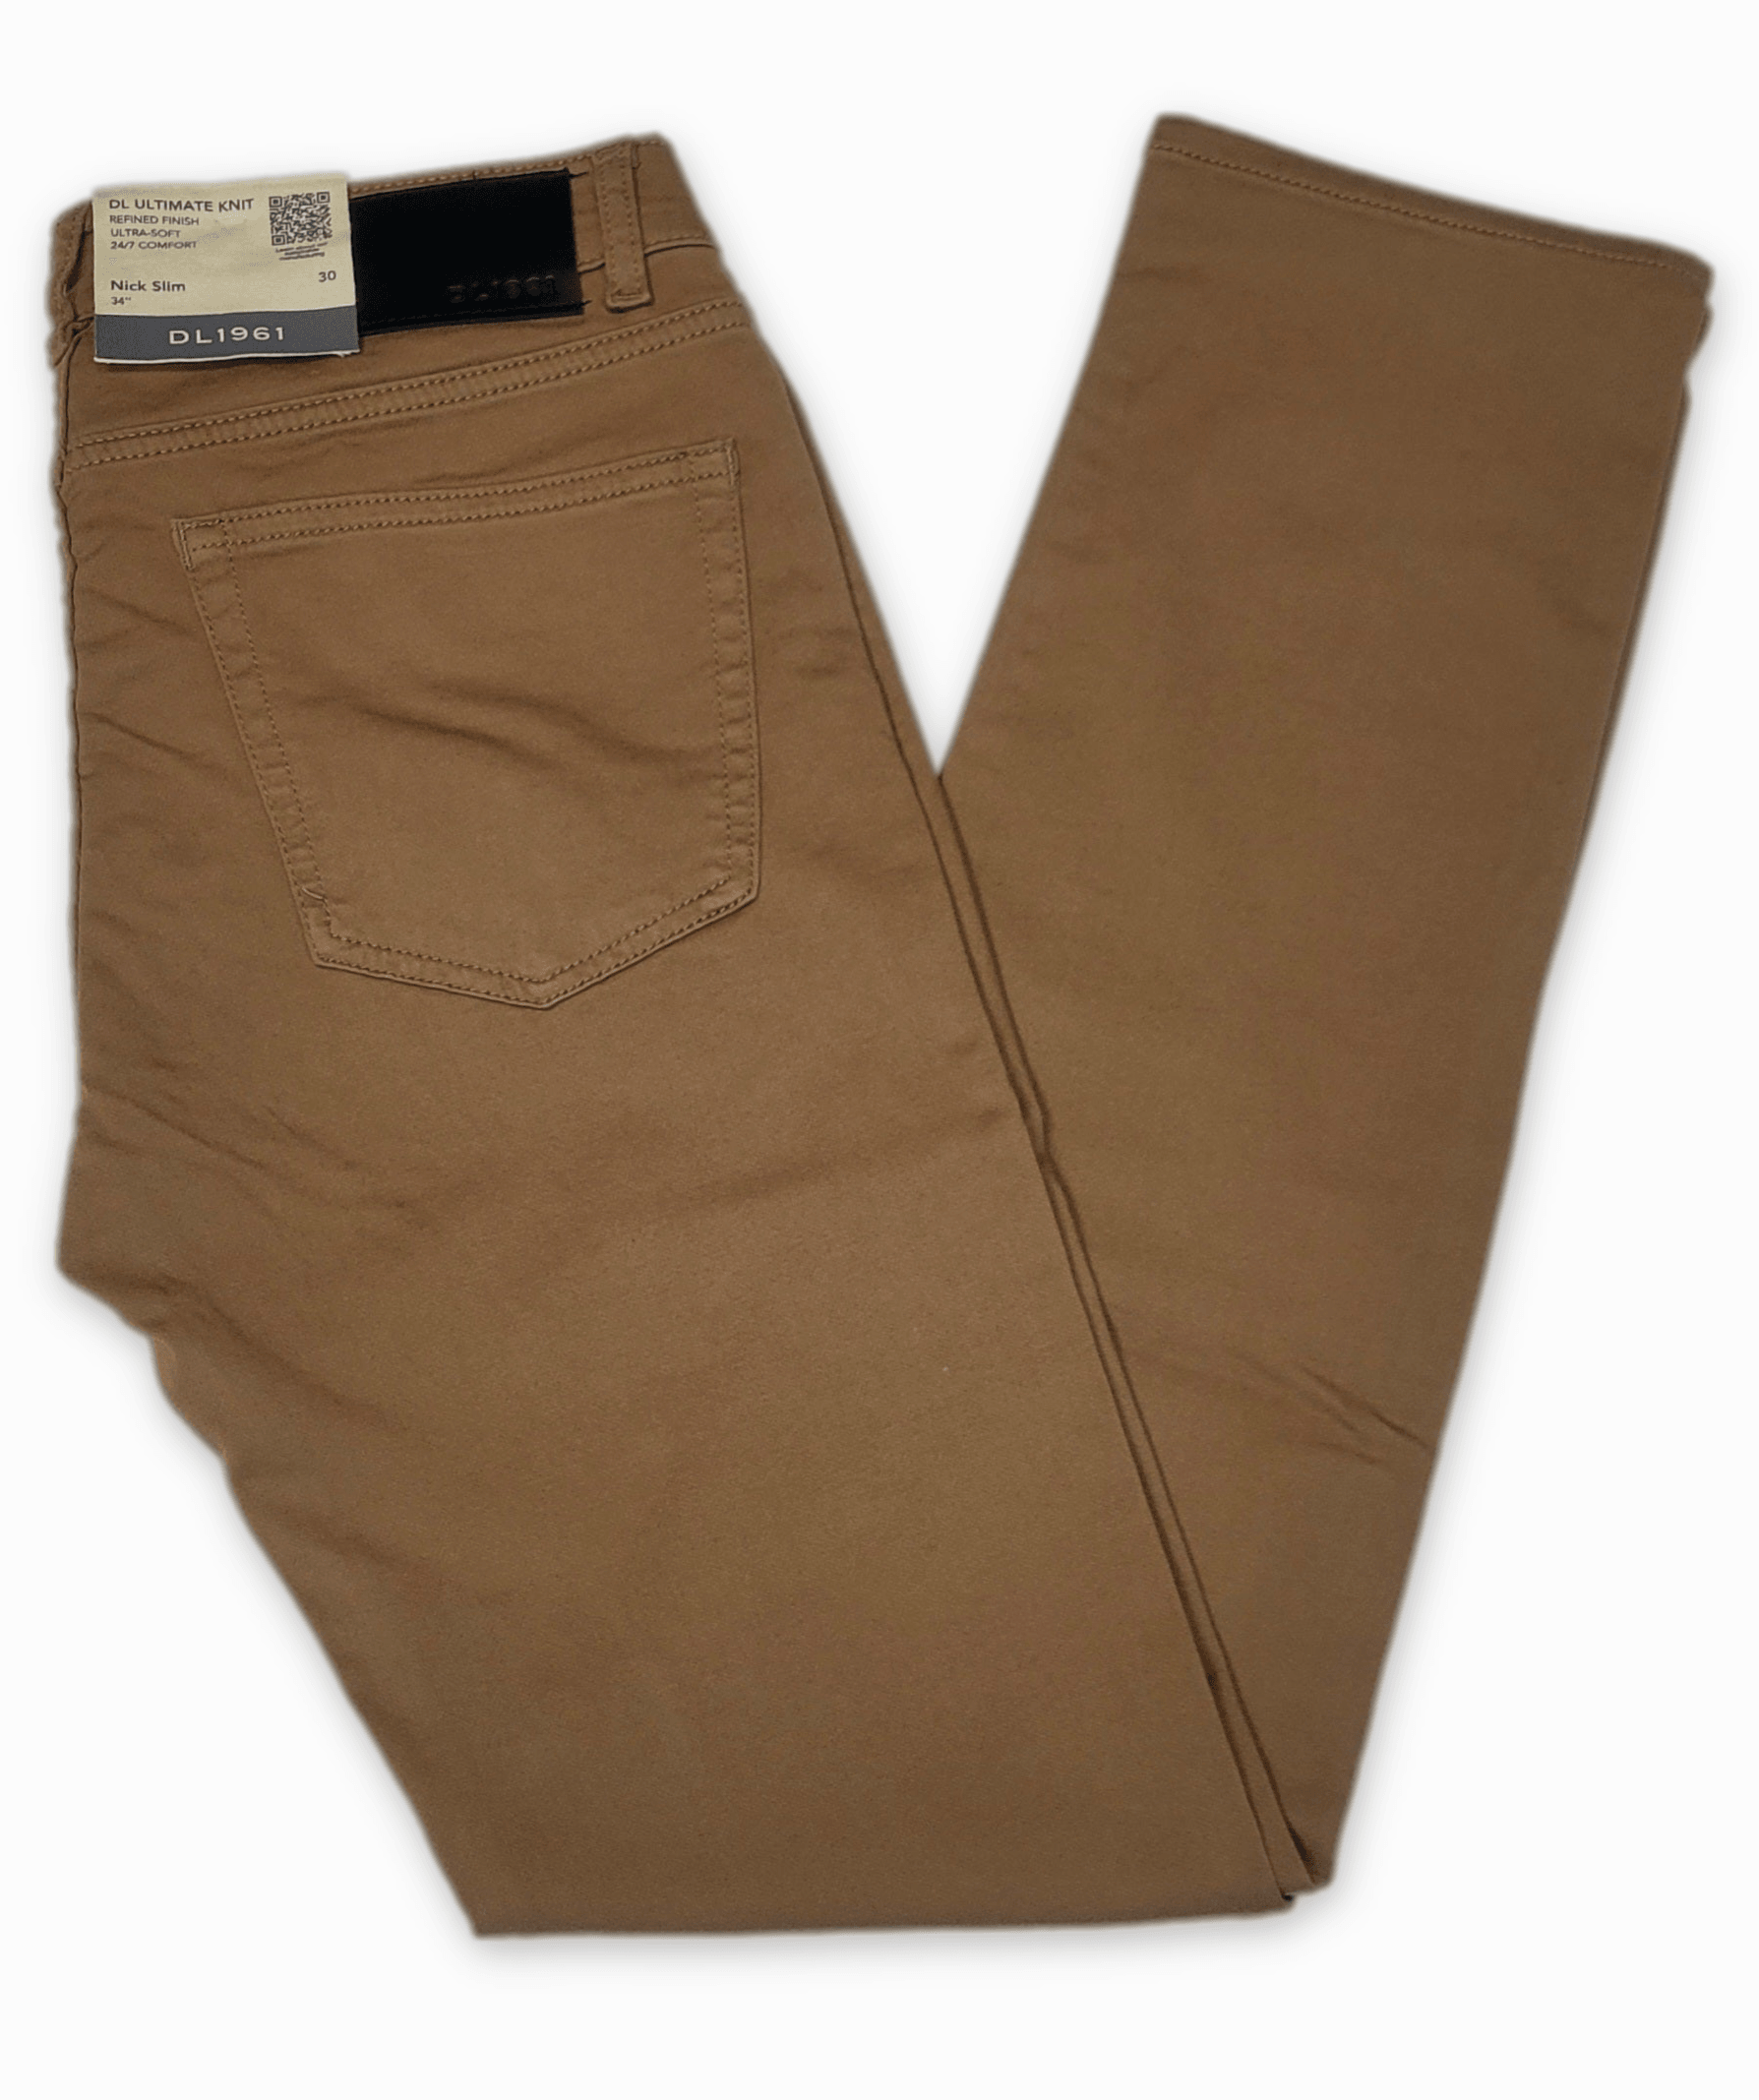 Laflamme- Jeans de twill tan - DL1961